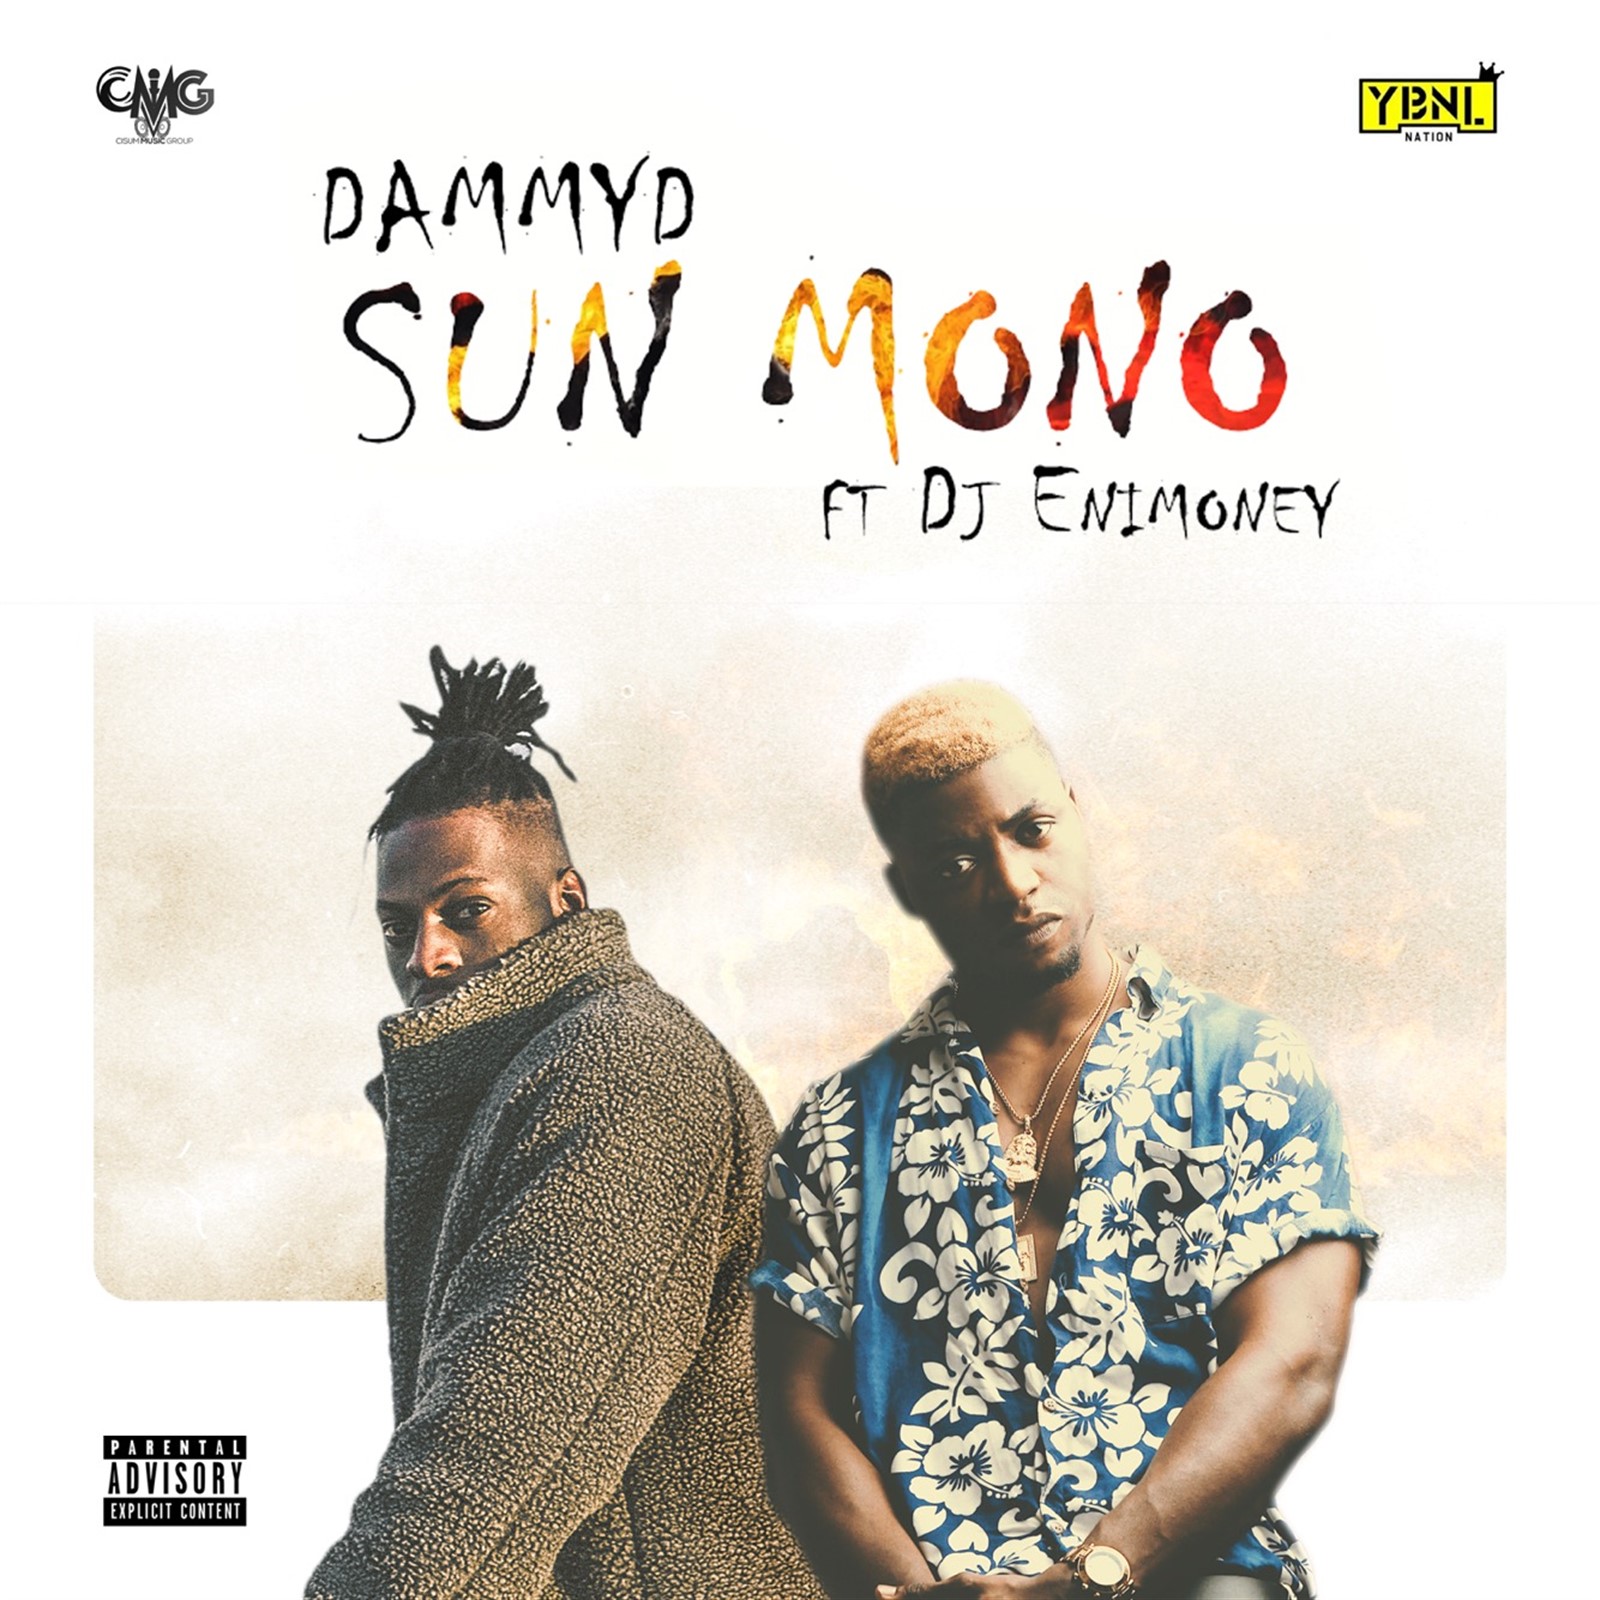 DammyD – Sunmono ft. DJ Enimoney